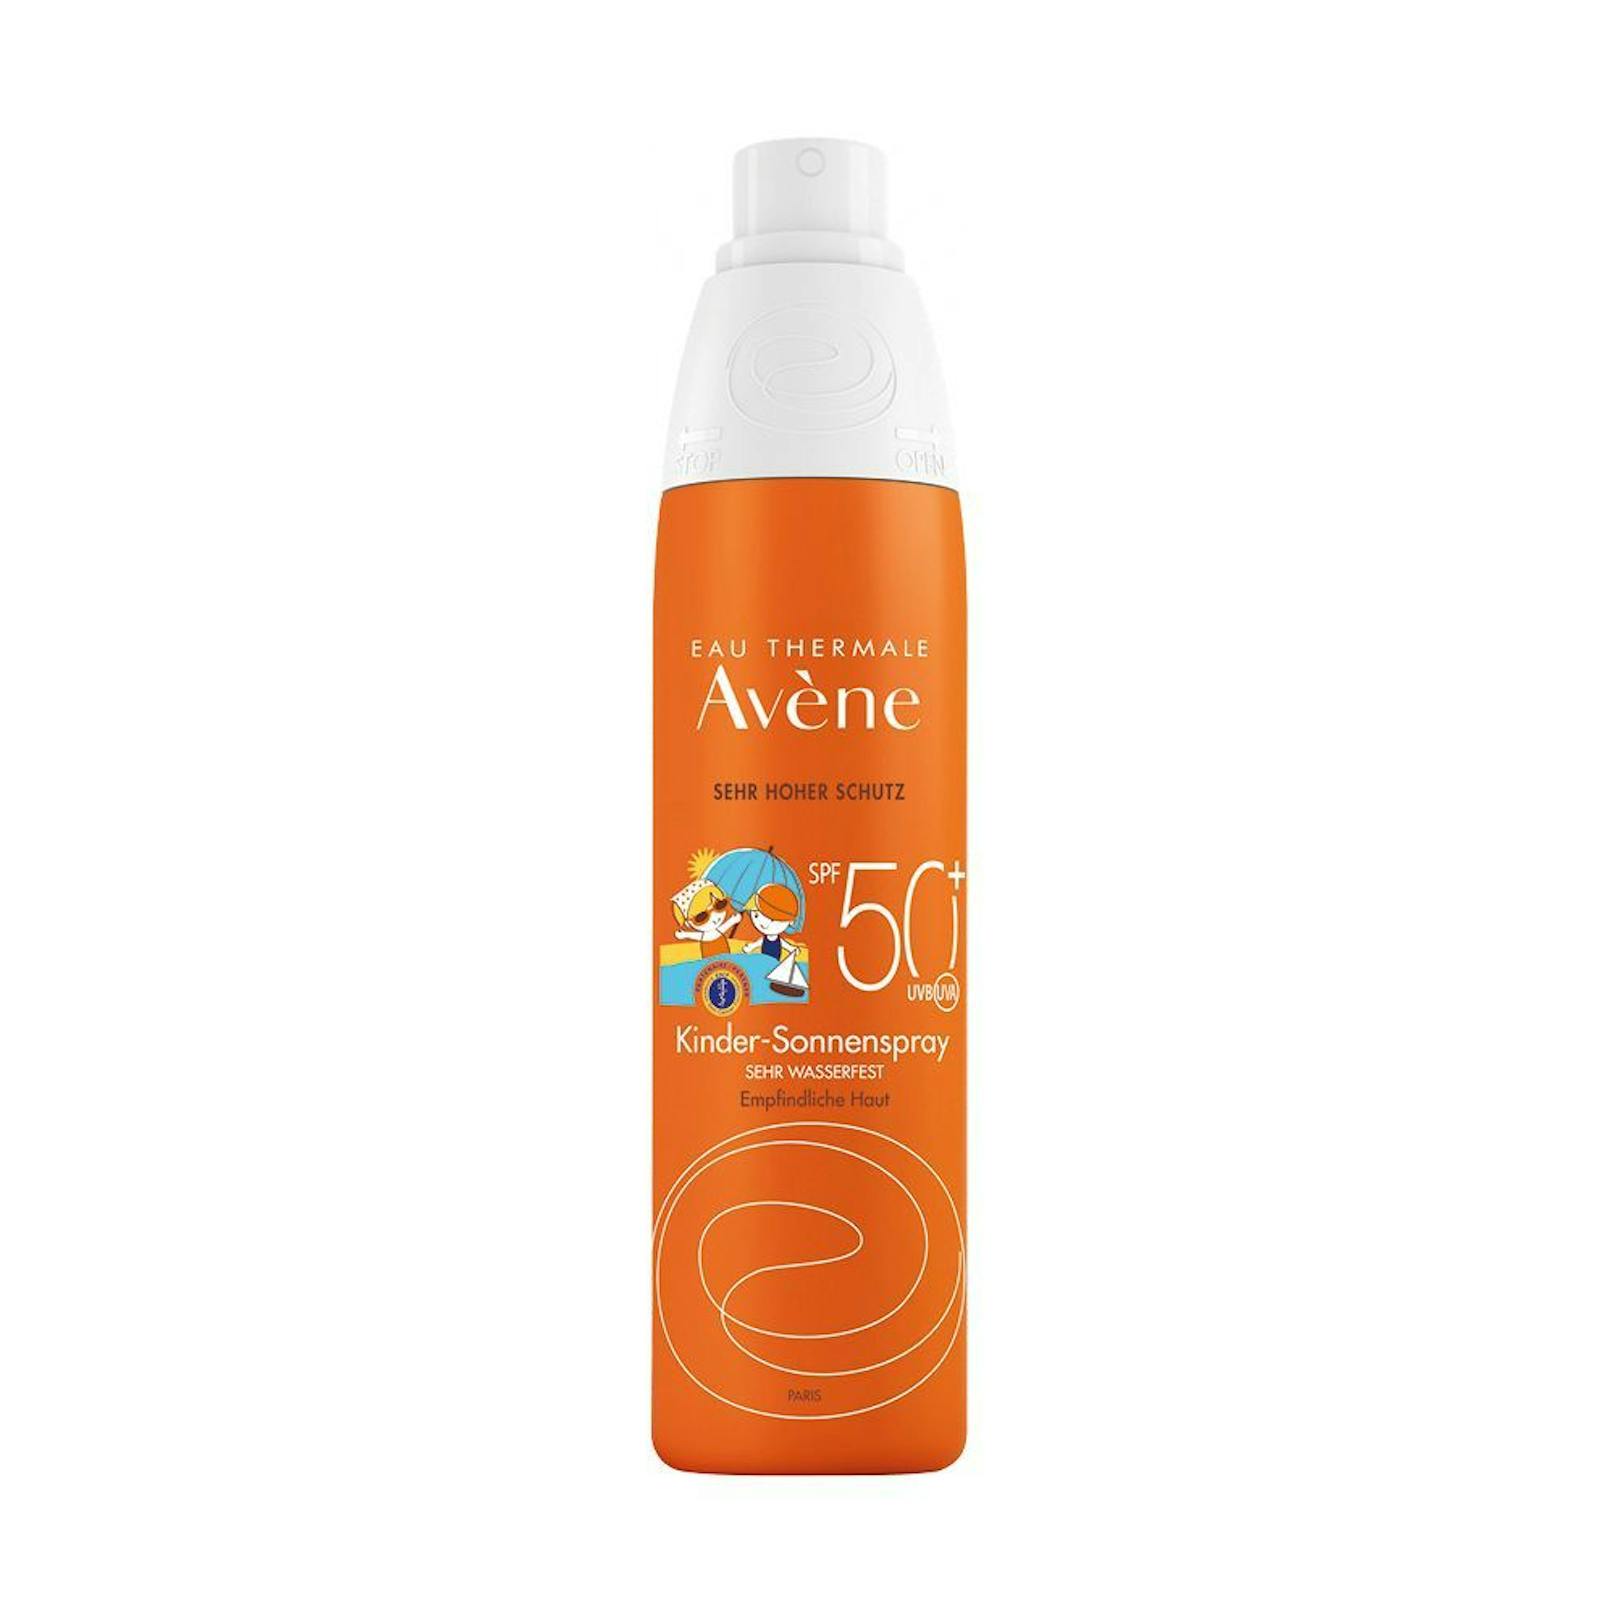 Die Avène Kinder-Sonnenspray SPF 50+ verwendet chemische Filter, enthält kein Parfum oder sonstige bedenkliche Inhaltsstoffe. 200ml um 23,90 Euro.